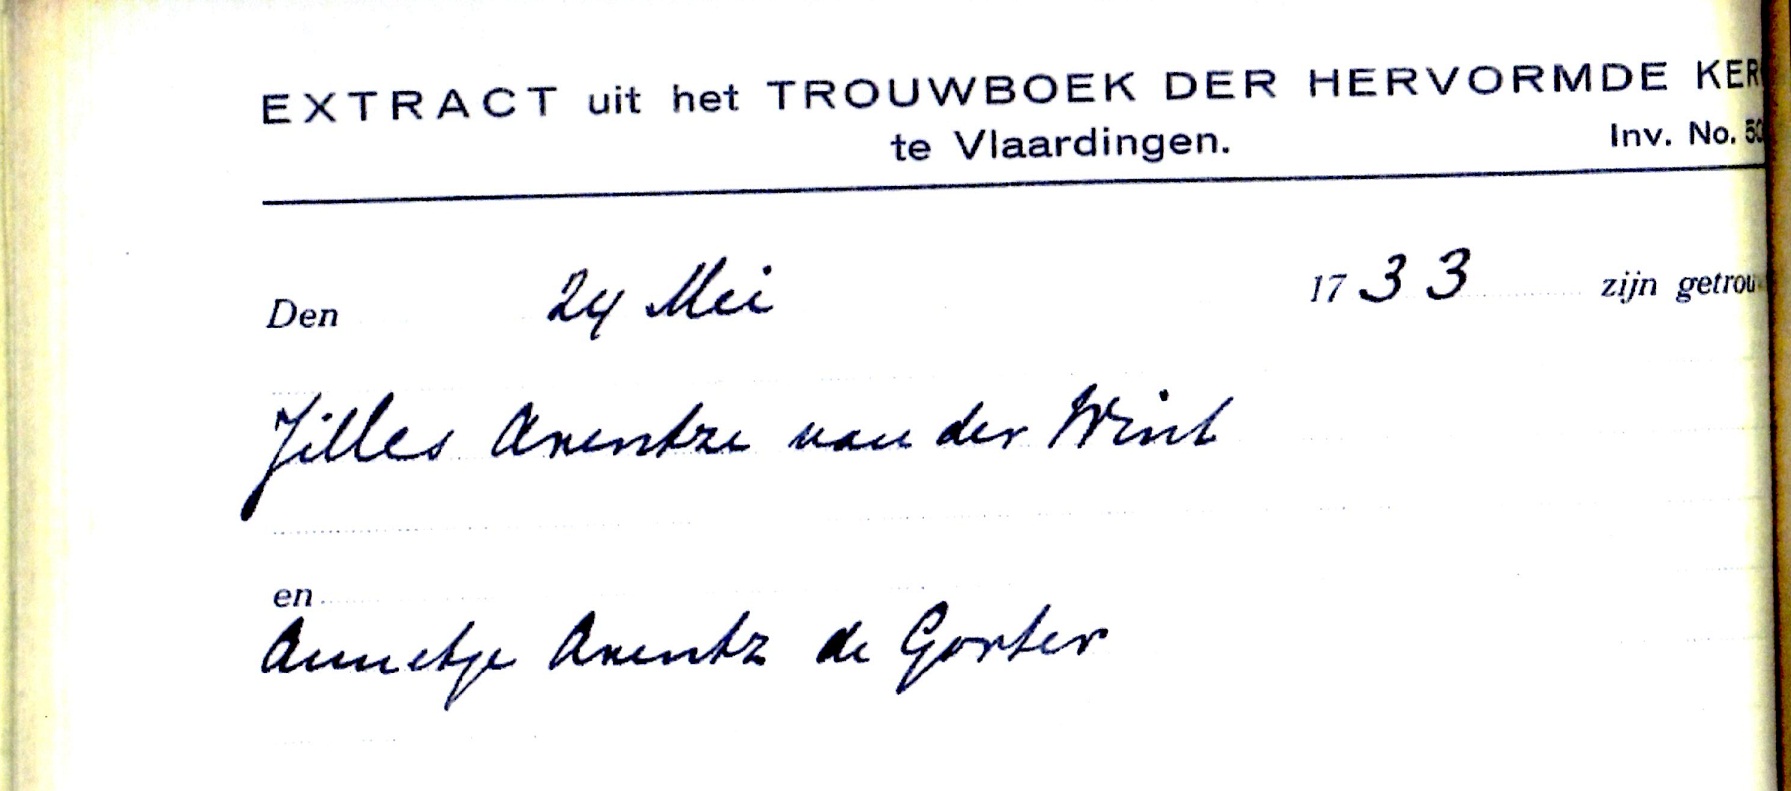 1733-05-24 Extract Trouwboek Jilles Arentsz van der Wint en Annetje Arensd de Gorter